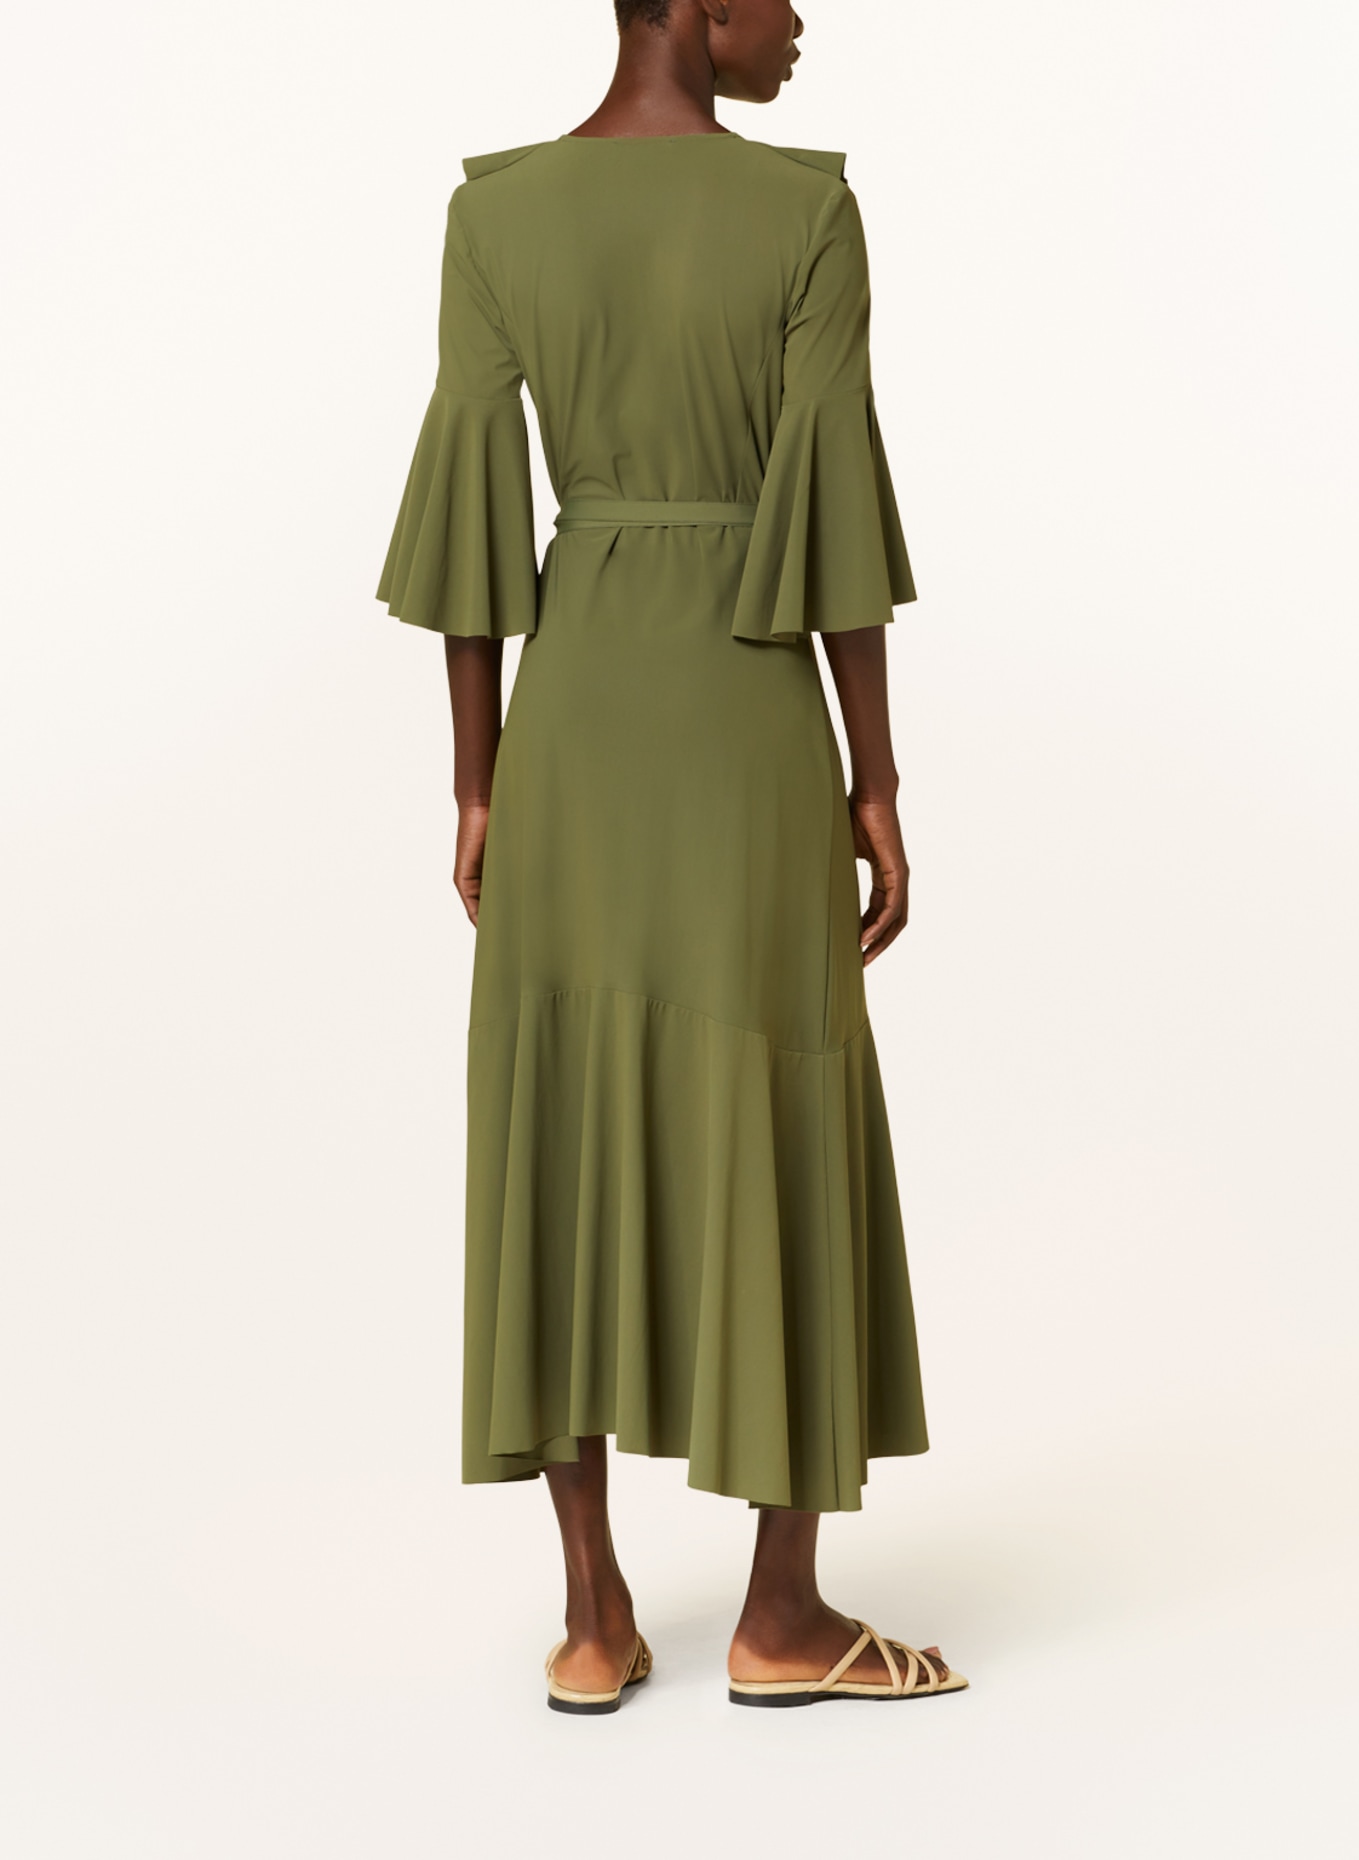 DOROTHEE SCHUMACHER Wickelkleid mit 3/4-Arm, Farbe: OLIV (Bild 3)